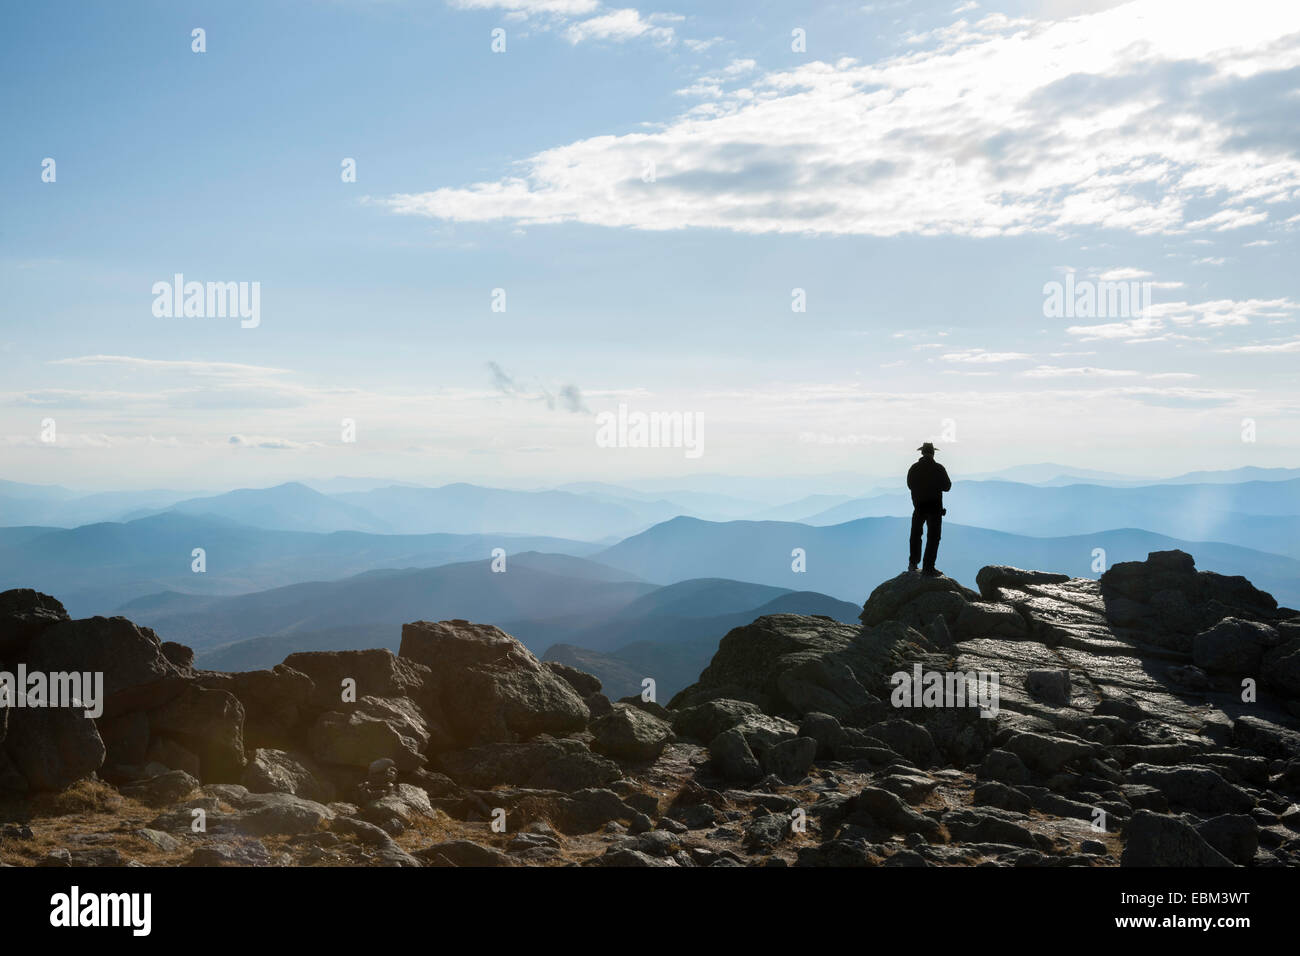 Nicht mehr wiederzuerkennen Silhouette des Menschen stehen auf Felsvorsprung in Ferne, am Gipfel des Mount Washington, Blick auf das vista Stockfoto